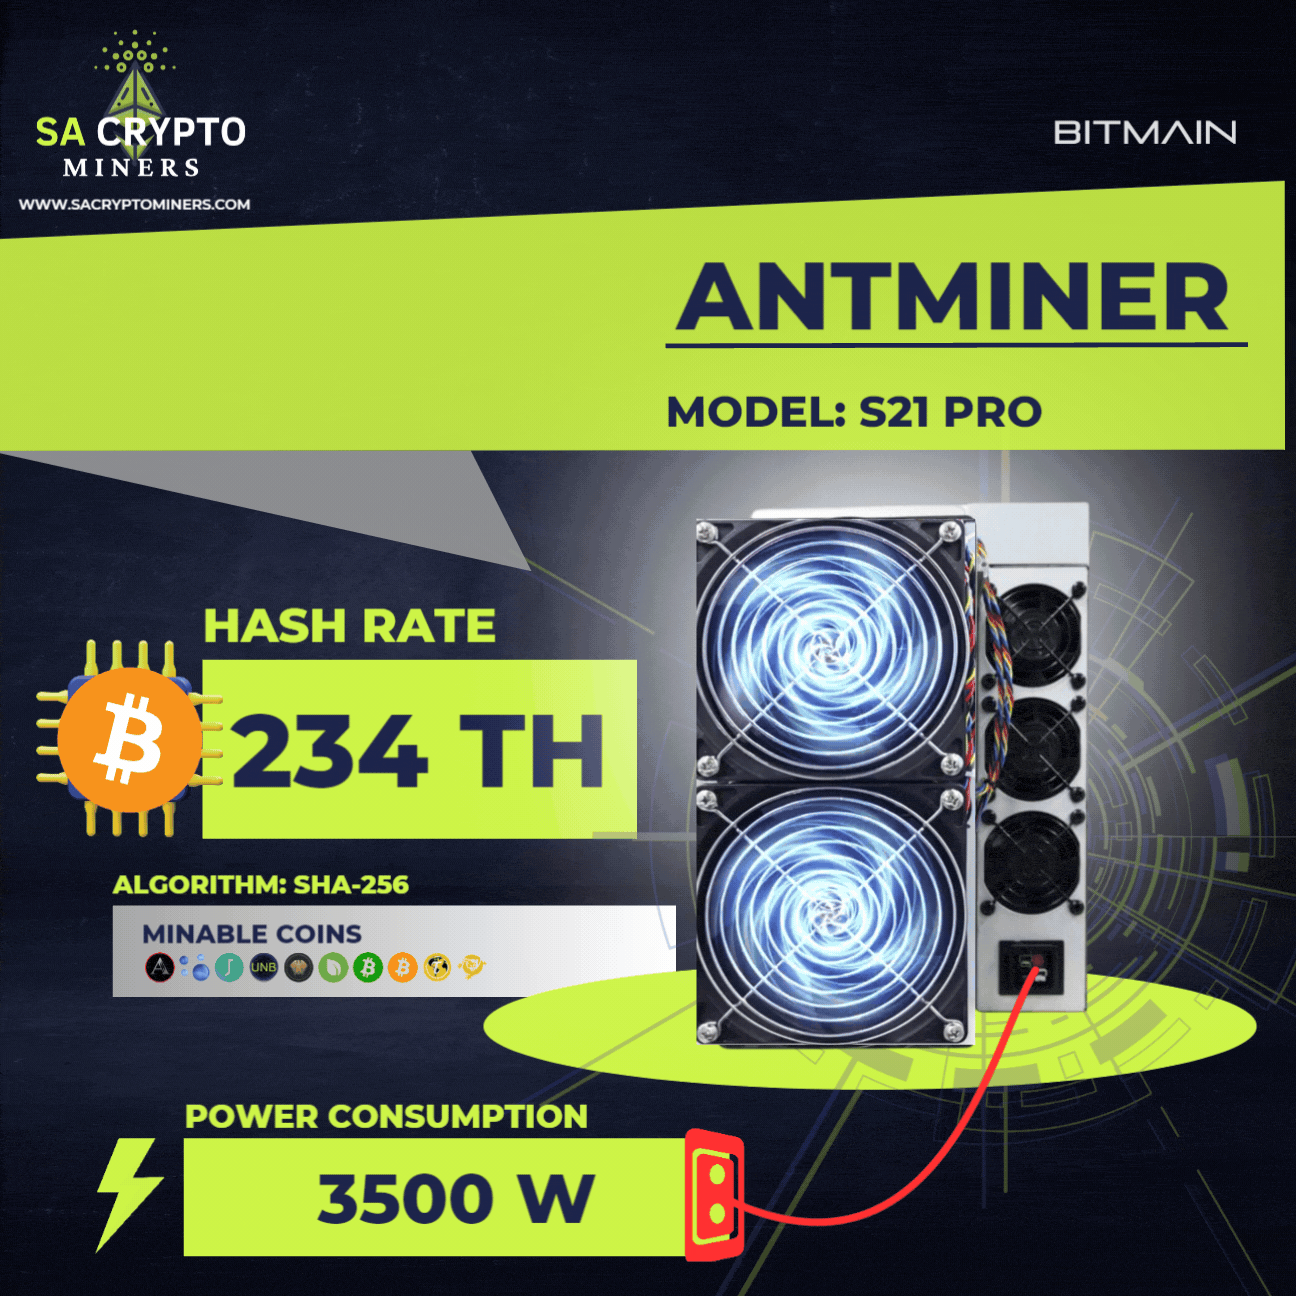 New Bitmain Antminer S21 Pro 234TH/S Bitcoin Miner